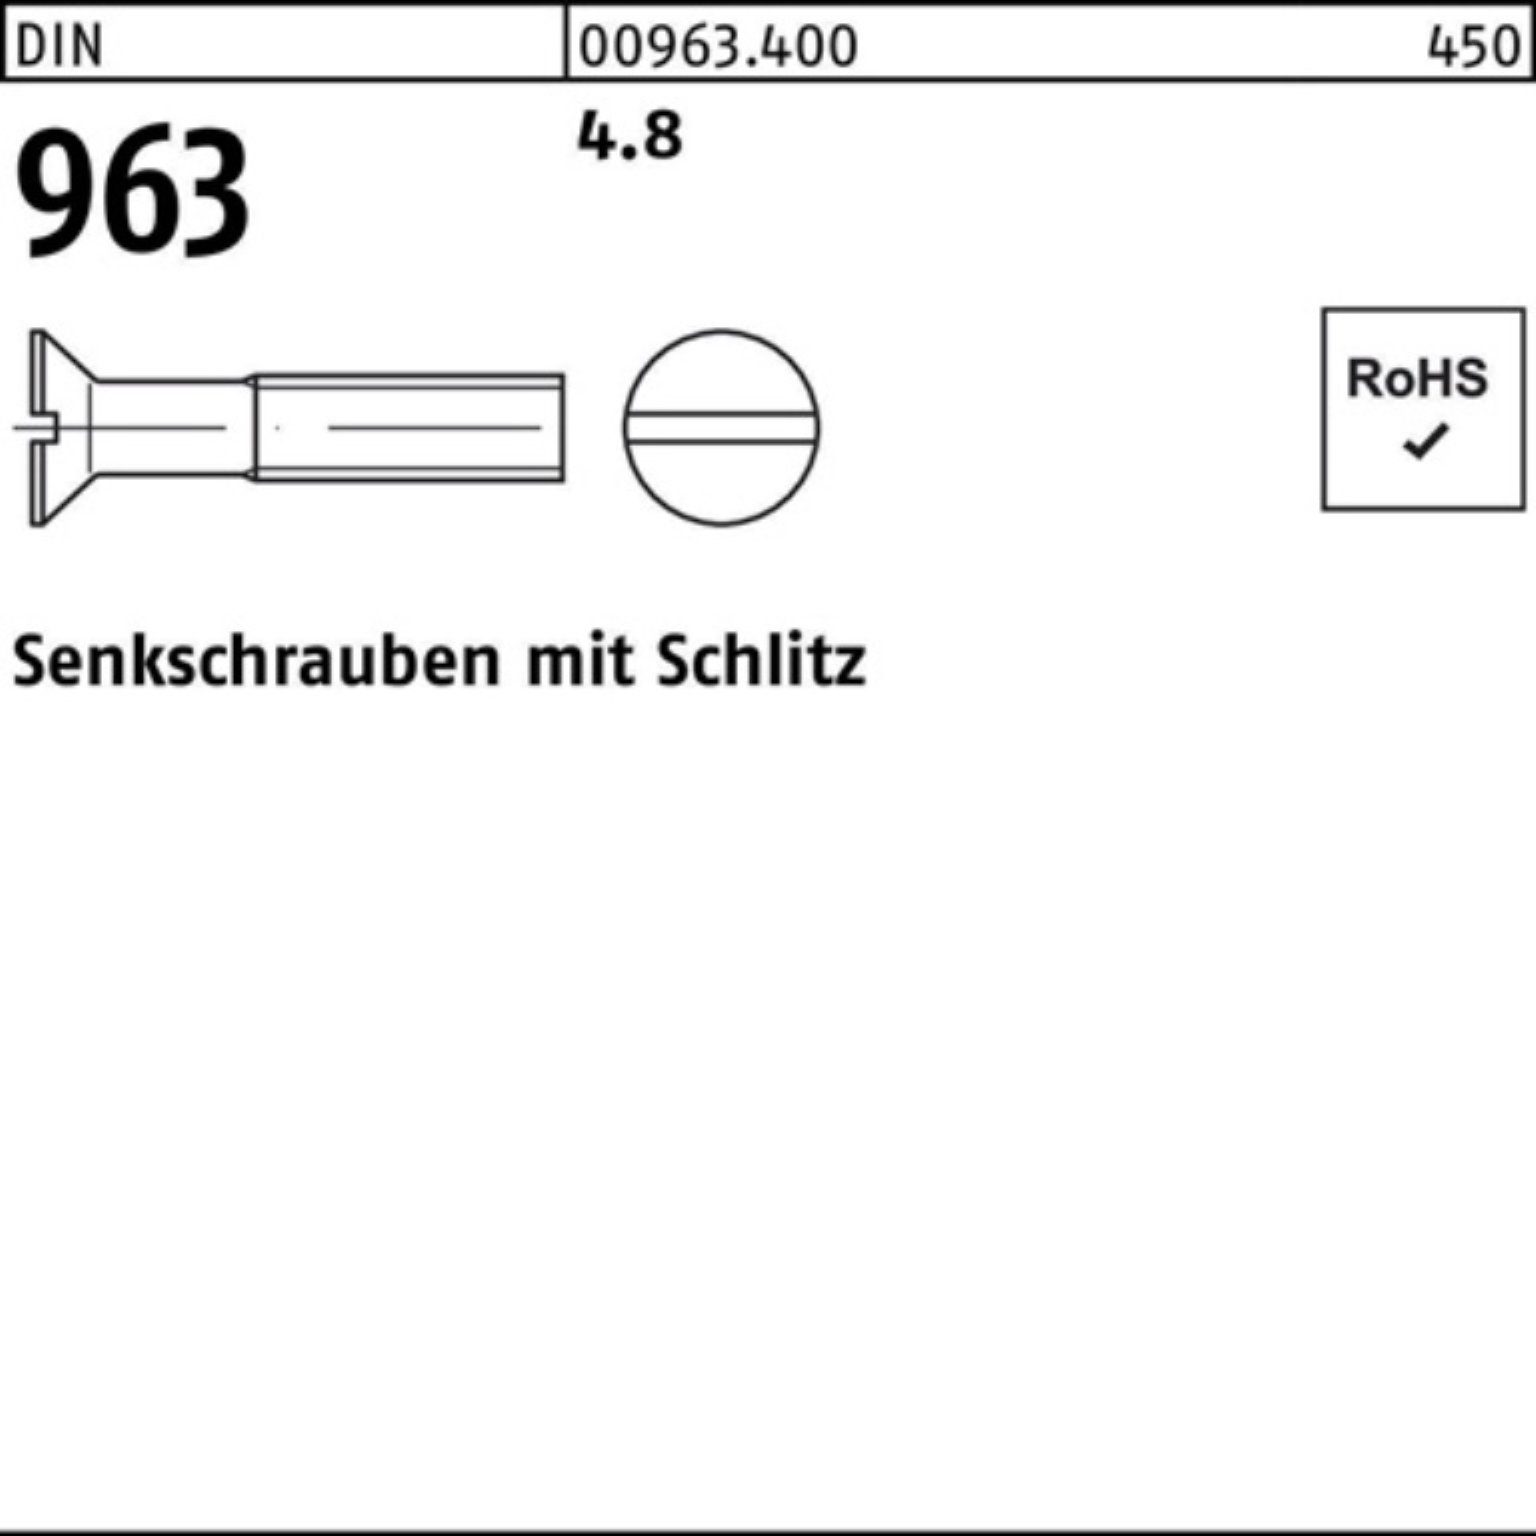 Reyher Senkschraube 200er M10x 200 Pack Stück DIN 40 Schlitz 4.8 DIN 963 963 Senkschraube